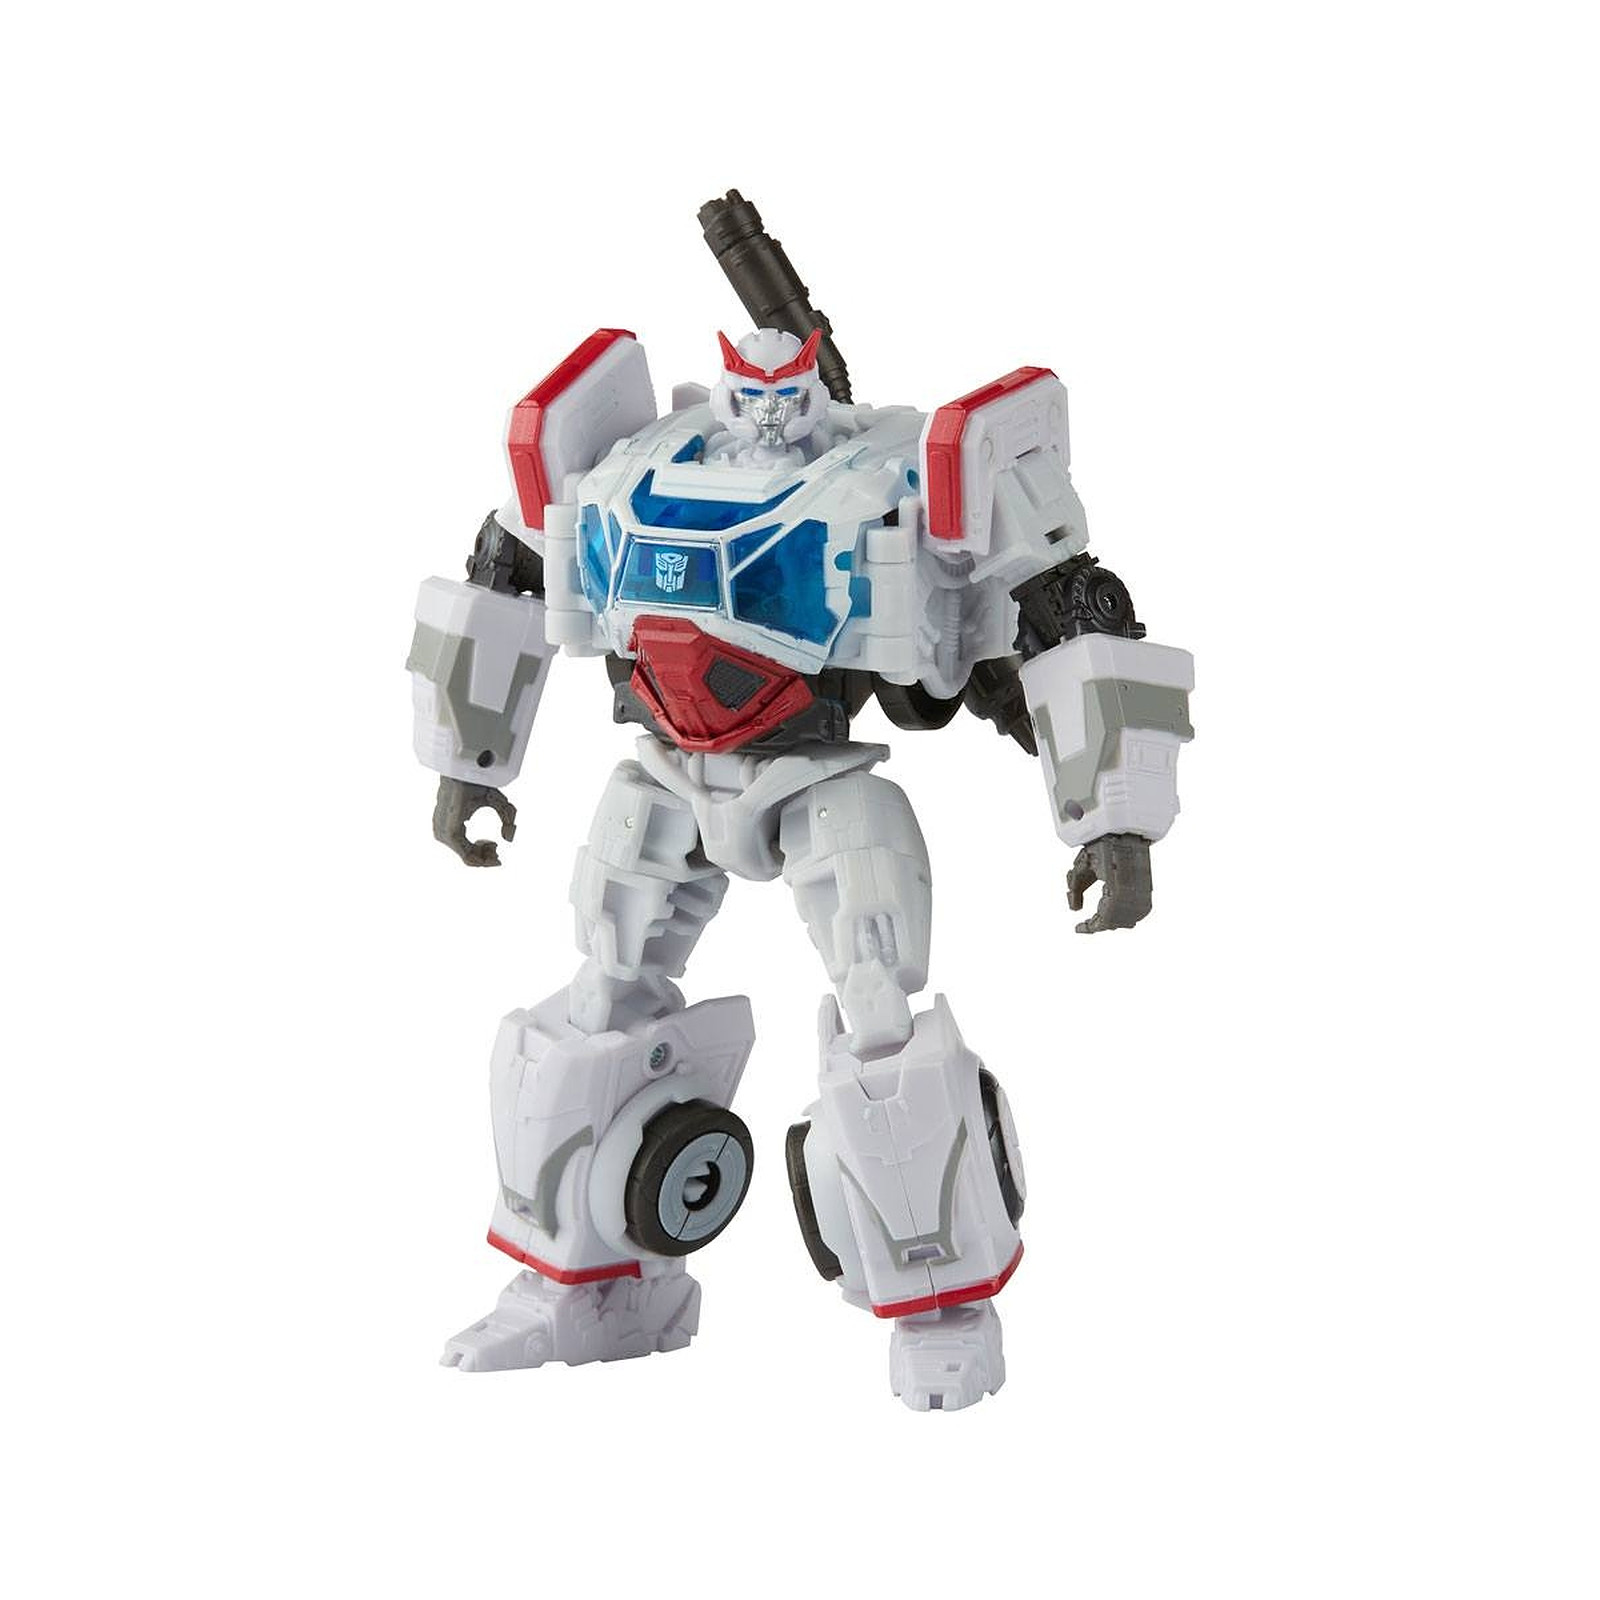 Transformers : Bumblebee Studio Series - Figurine Deluxe Class 2022 Autobot Ratchet 11 cm - Figurines Hasbro